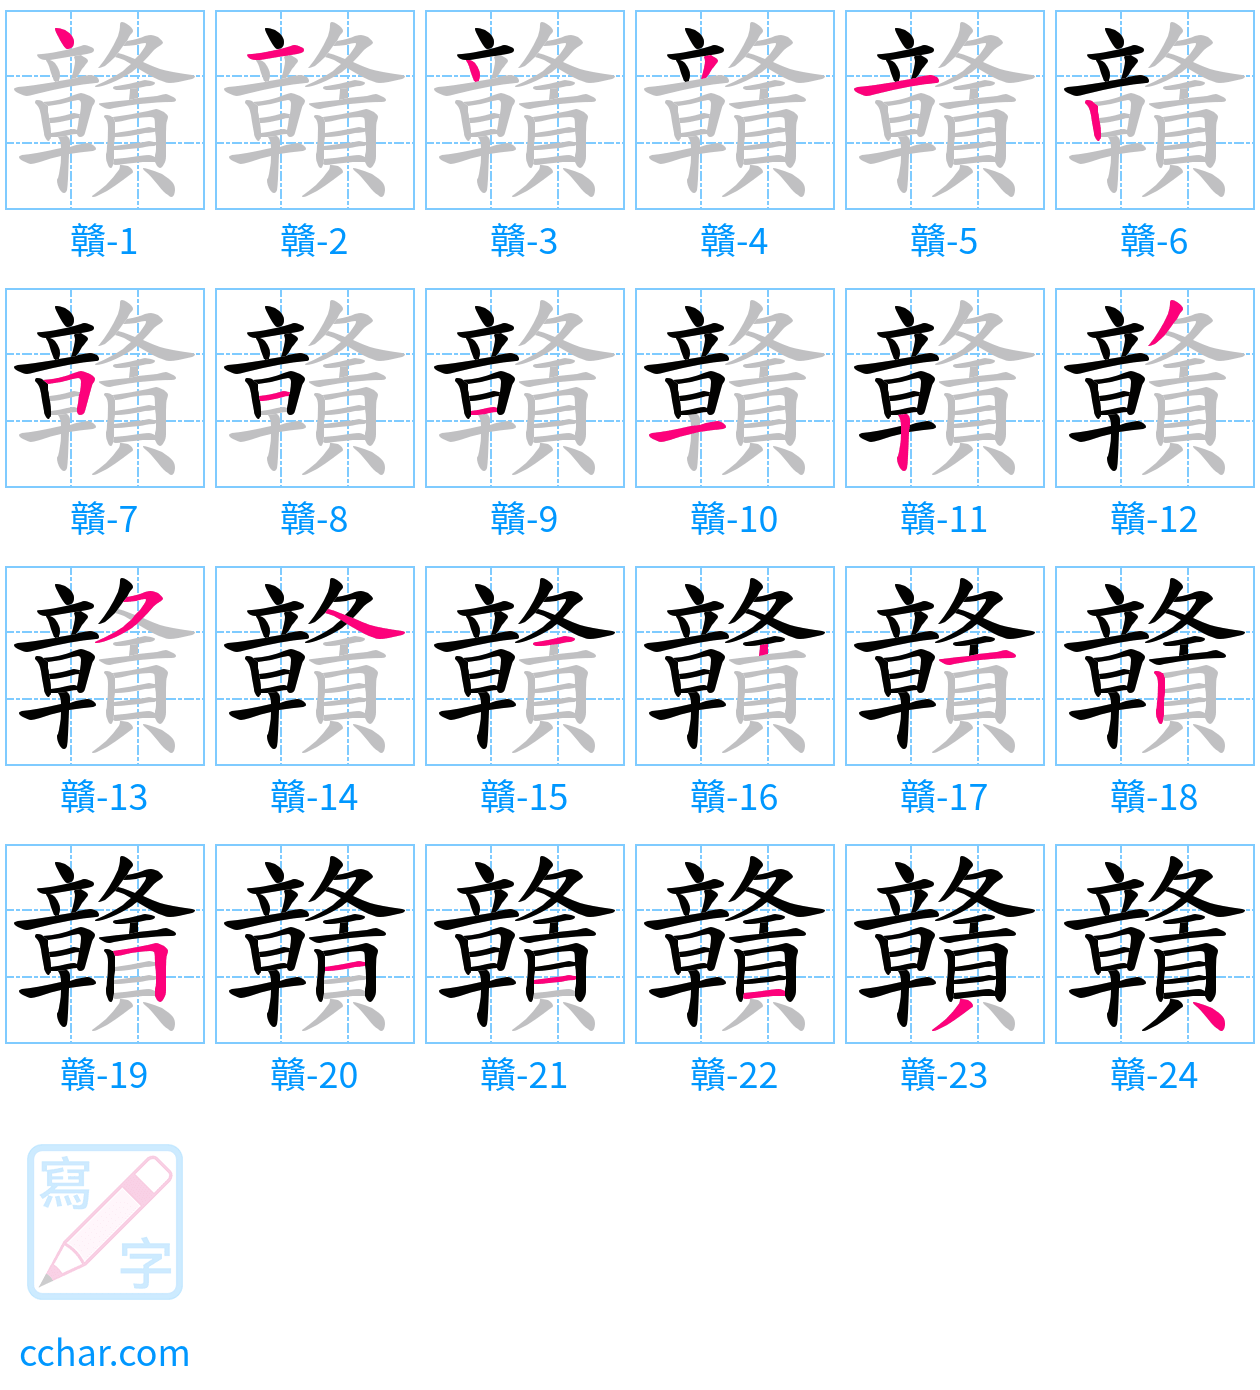 贛 stroke order step-by-step diagram